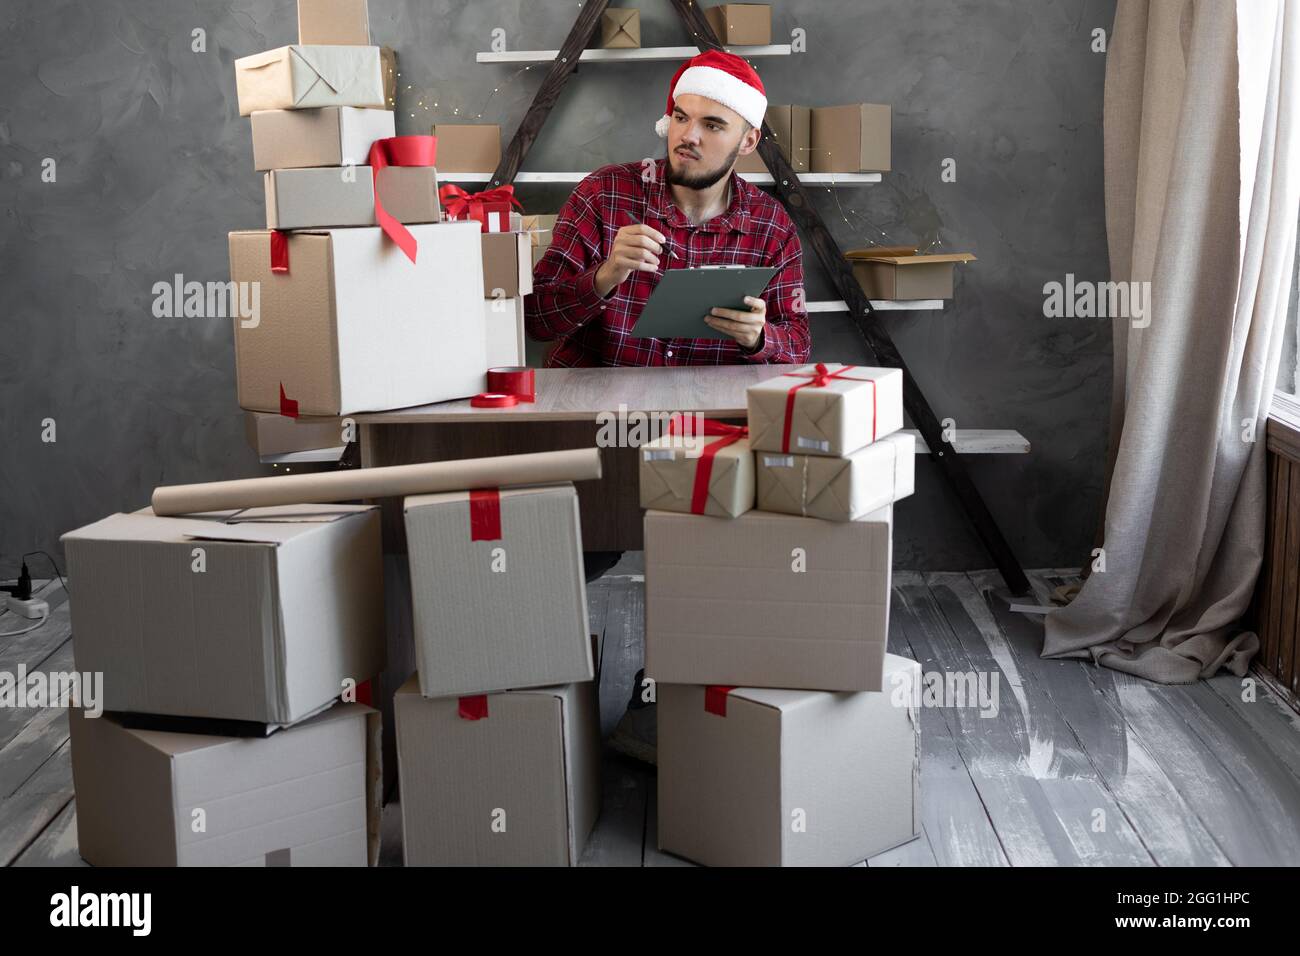 Un homme dans un chapeau de Père Noël travaille à la maison dans un entrepôt avec des boîtes de marchandises ou de cadeaux pour les enfants pour Noël. Comptabilité de marchandises magasin en ligne petit bus Banque D'Images